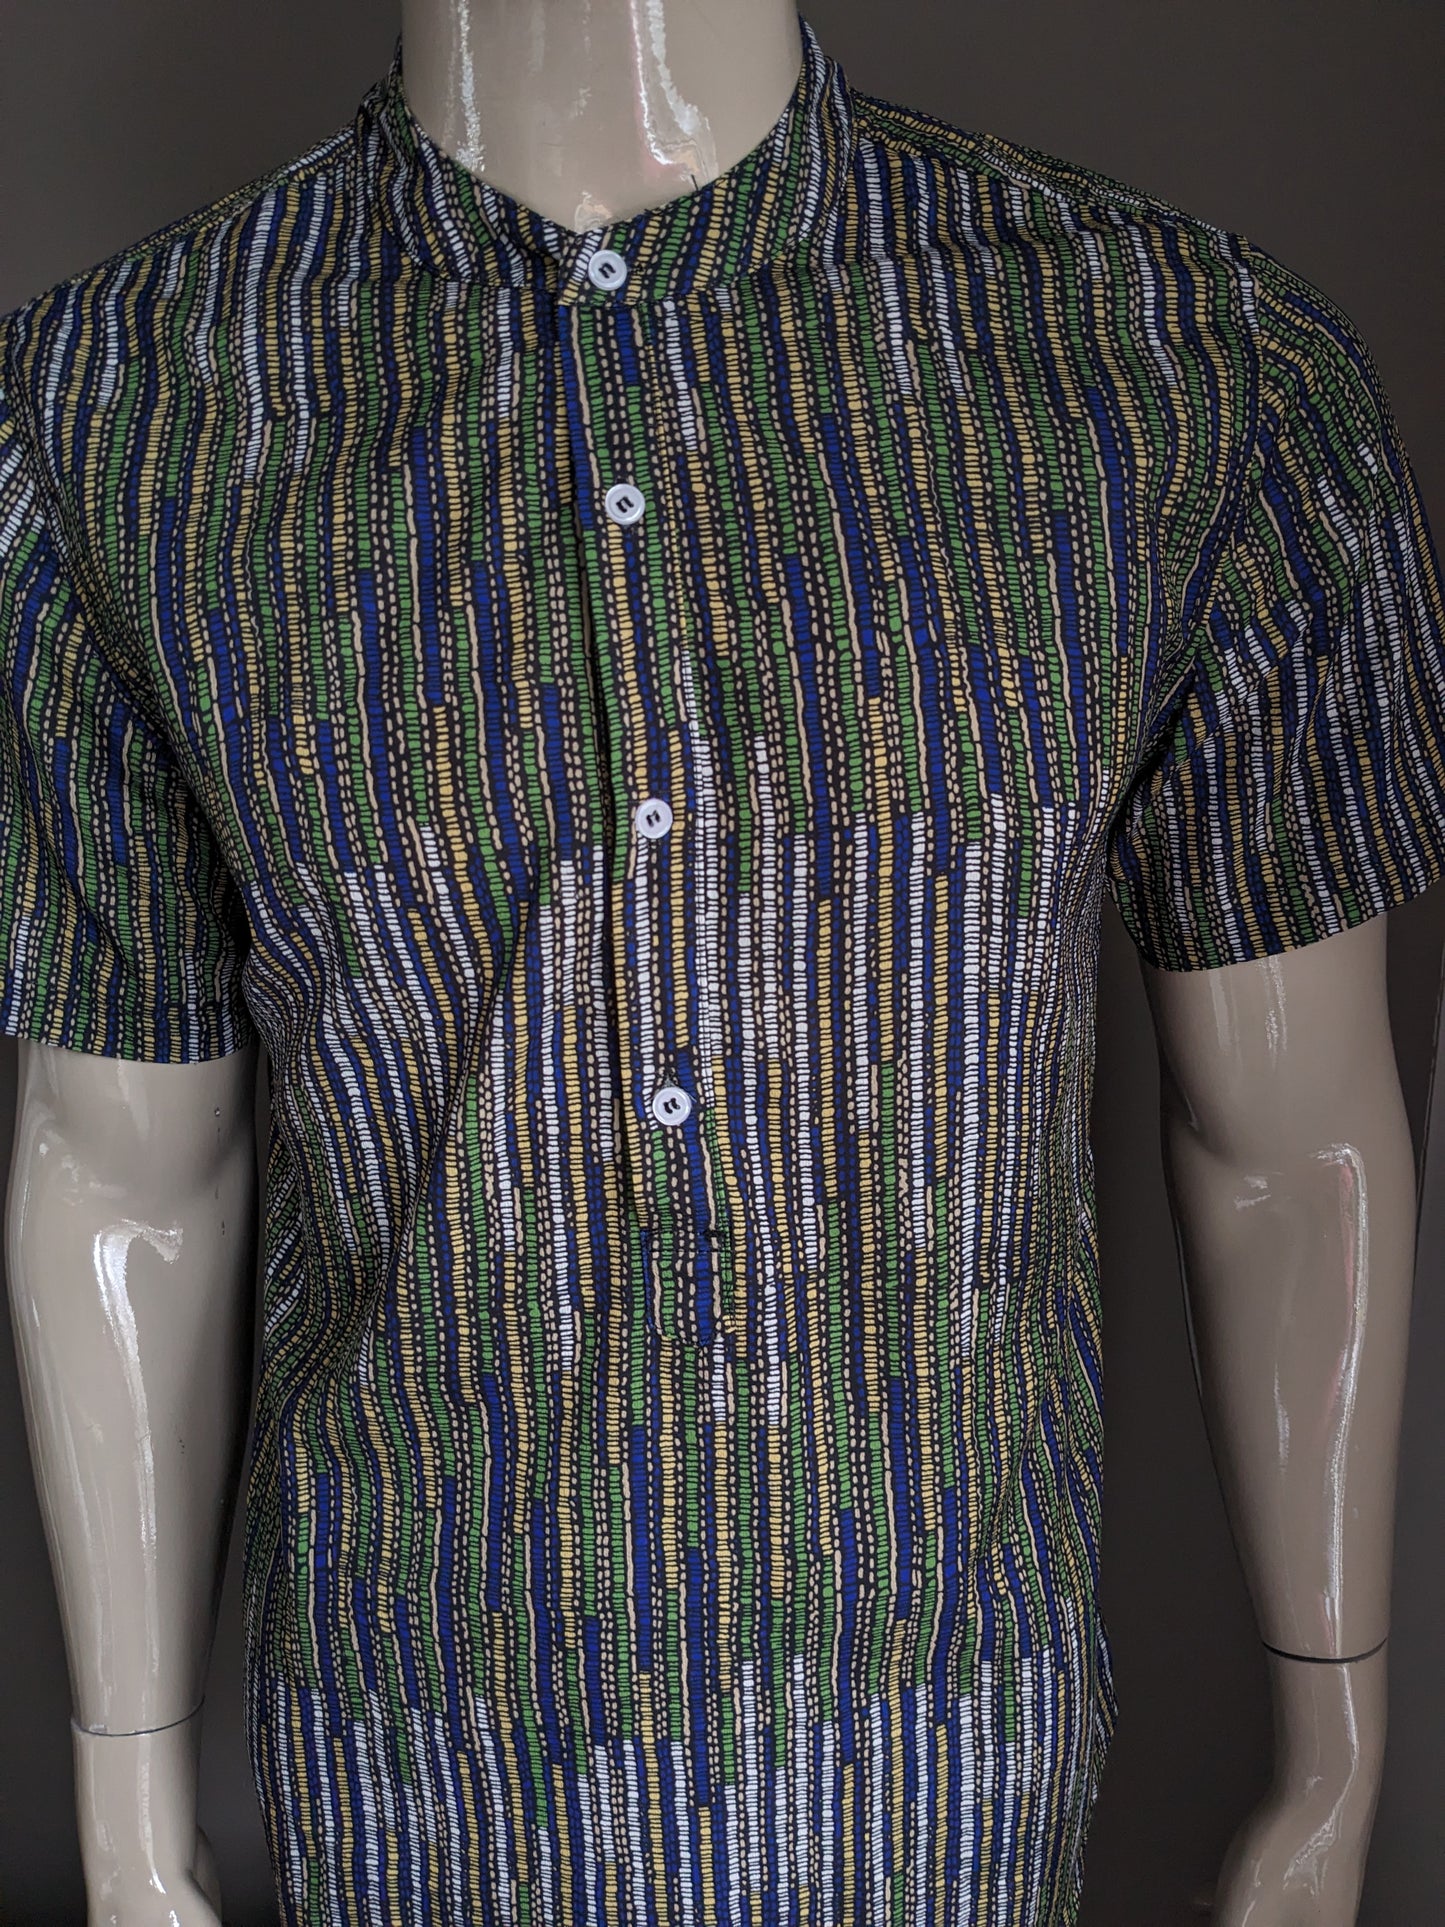 Polo / chemise MAO vintage à manches courtes. Impression jaune bleu vert. Taille M.